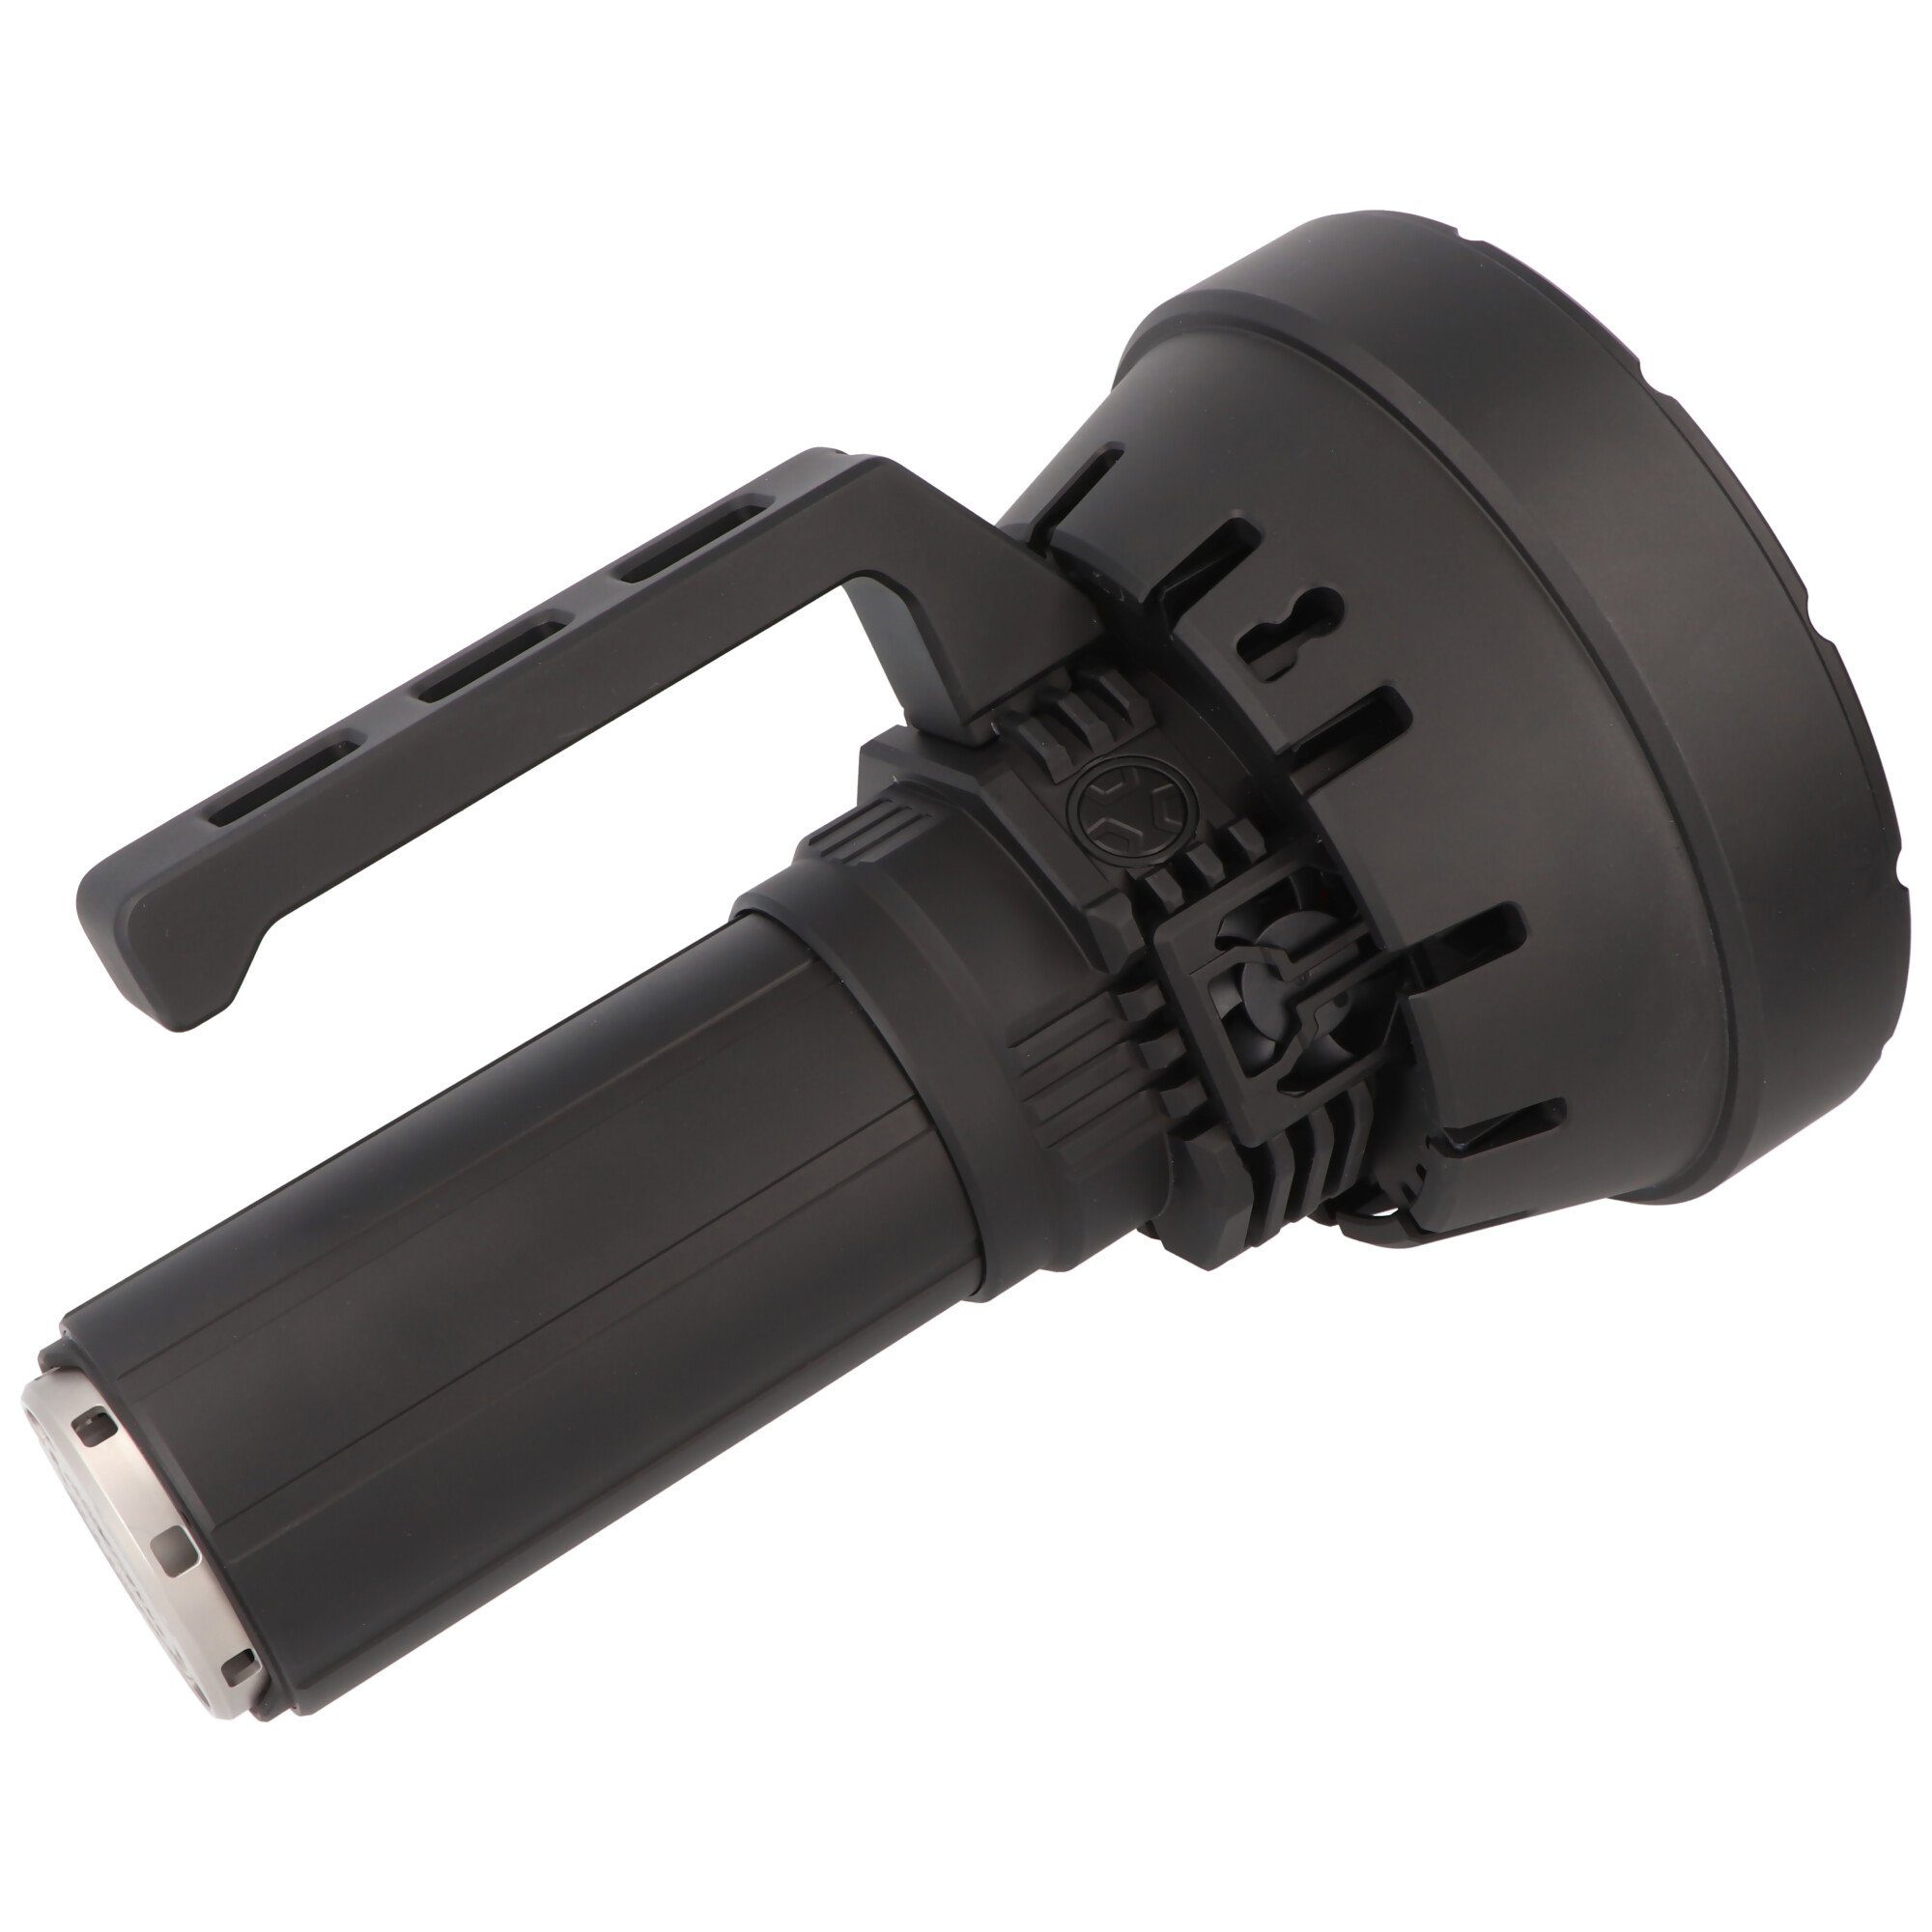 Imalent Arbeitsleuchte Imalent SR32 LED Taschenlampe ausgestattet mit mit 32 Lumen, 120.000